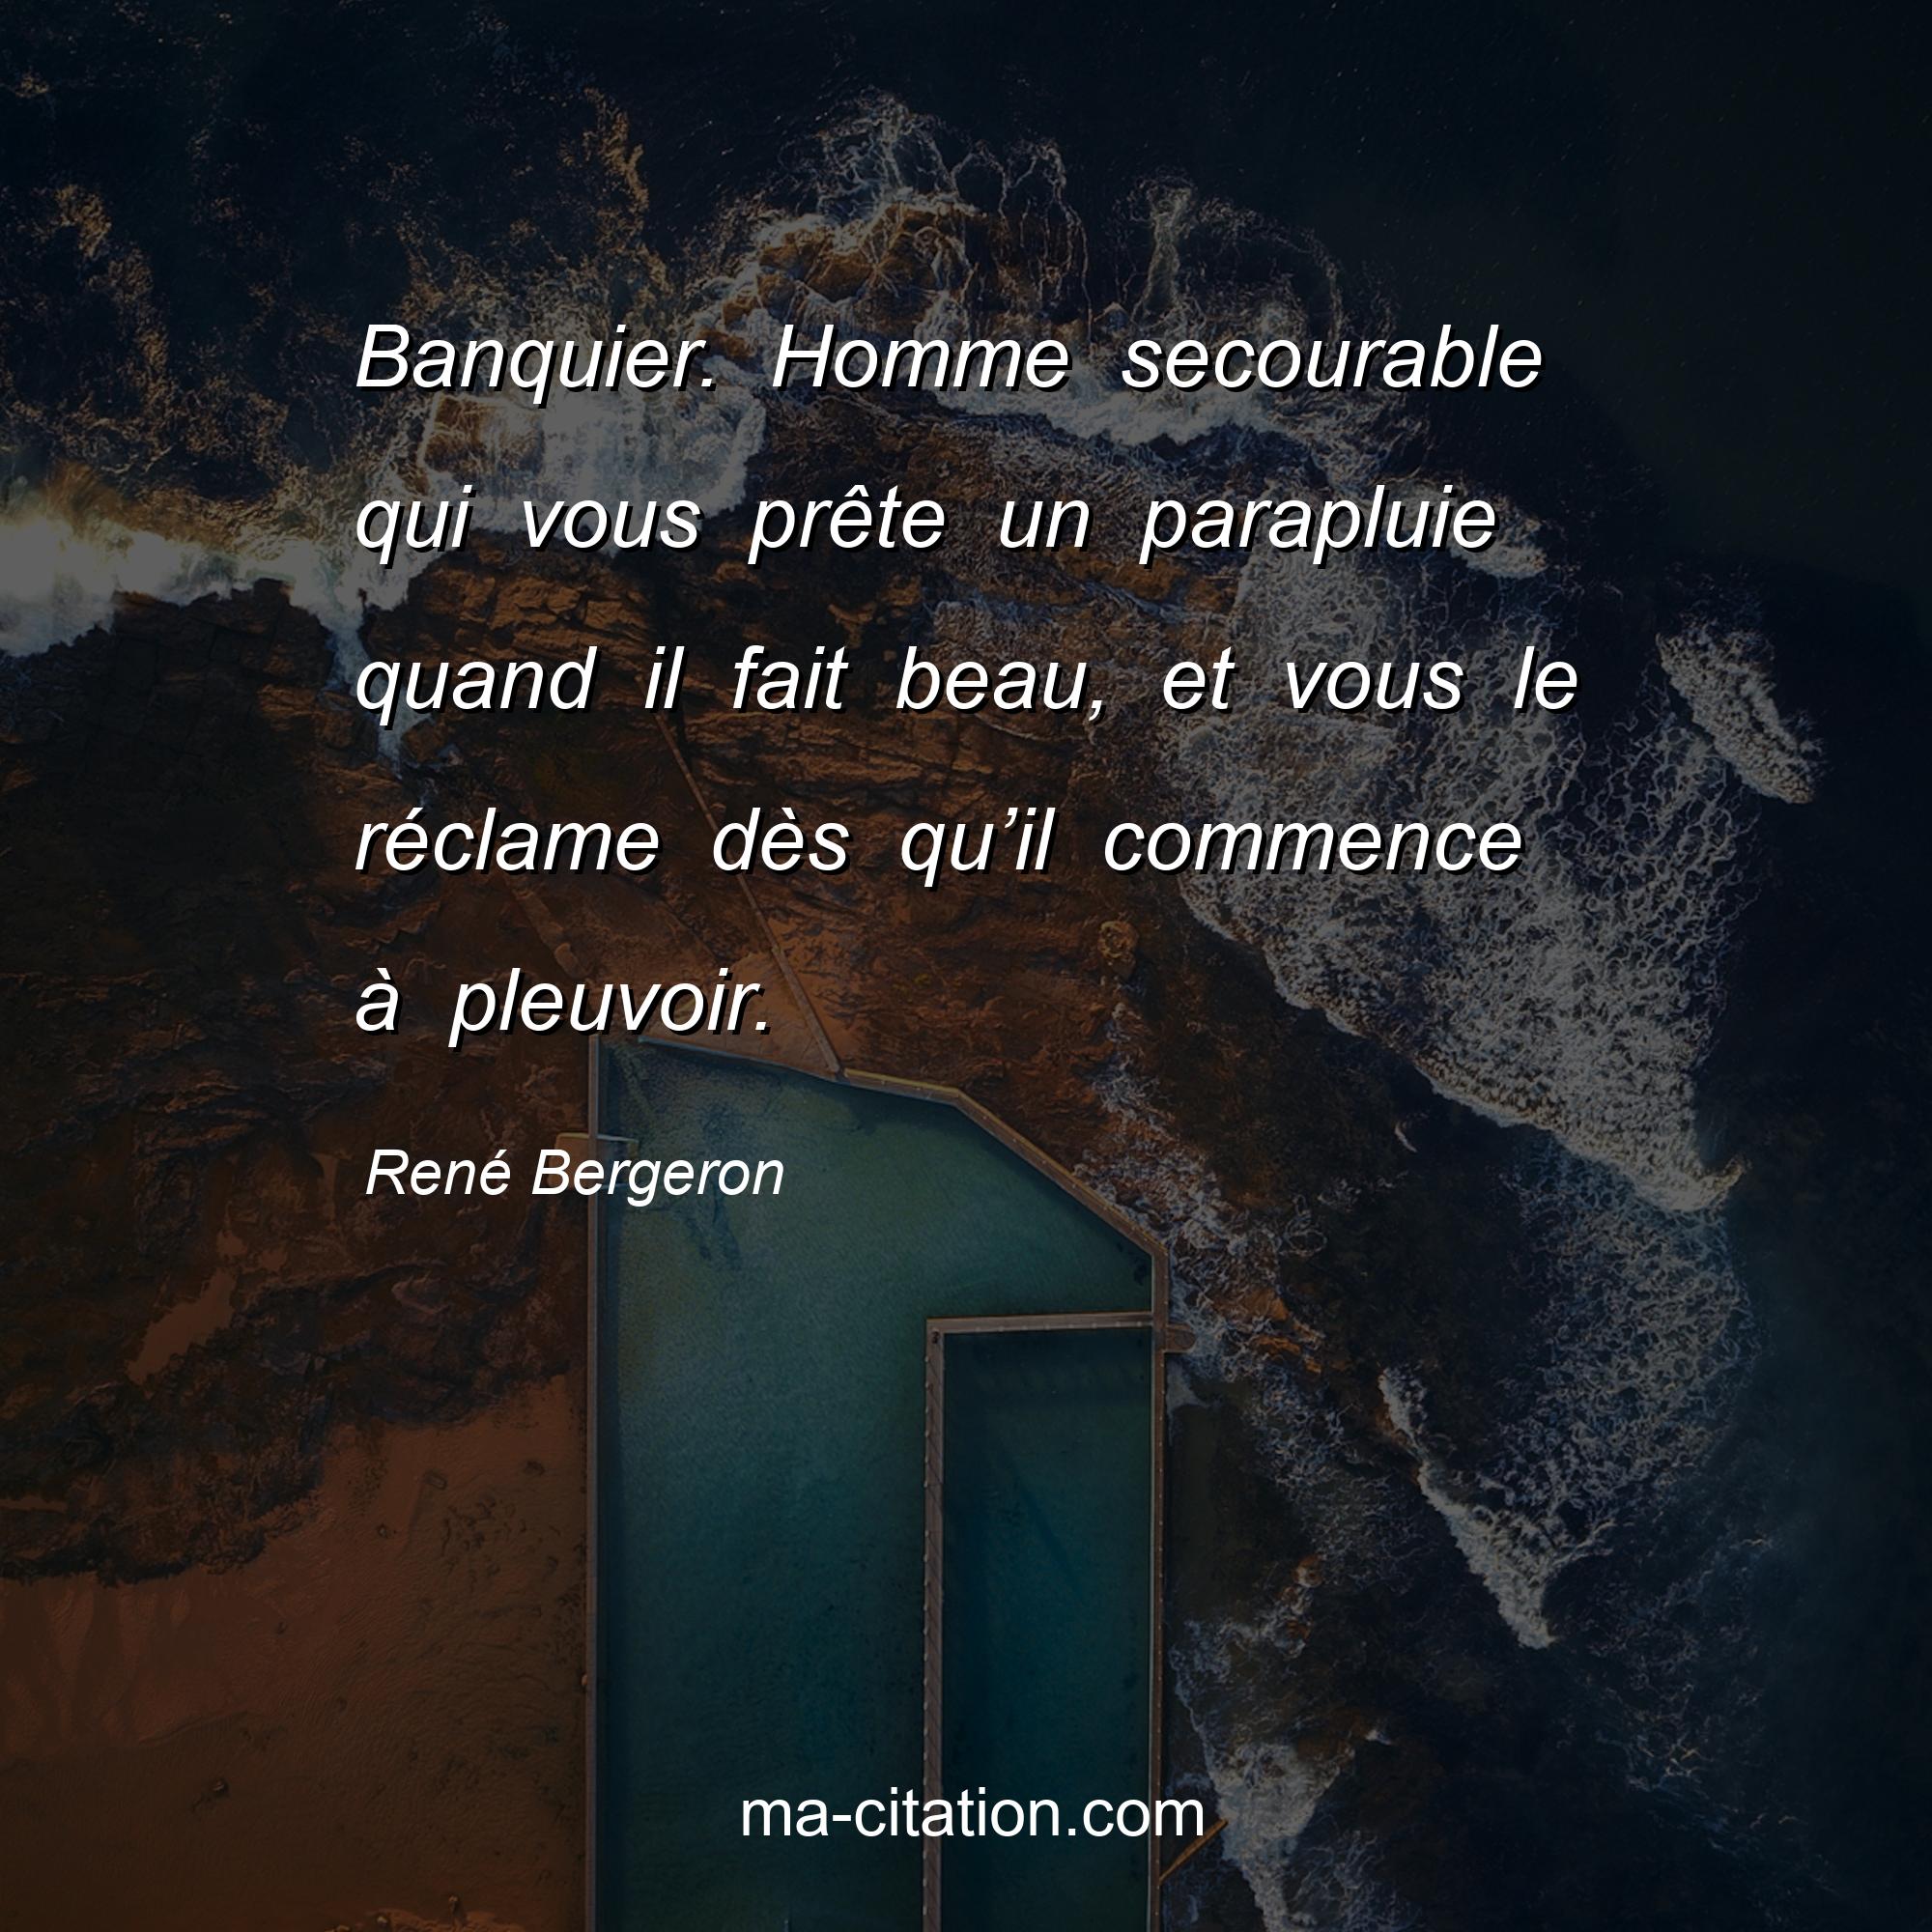 René Bergeron : Banquier. Homme secourable qui vous prête un parapluie quand il fait beau, et vous le réclame dès qu’il commence à pleuvoir.